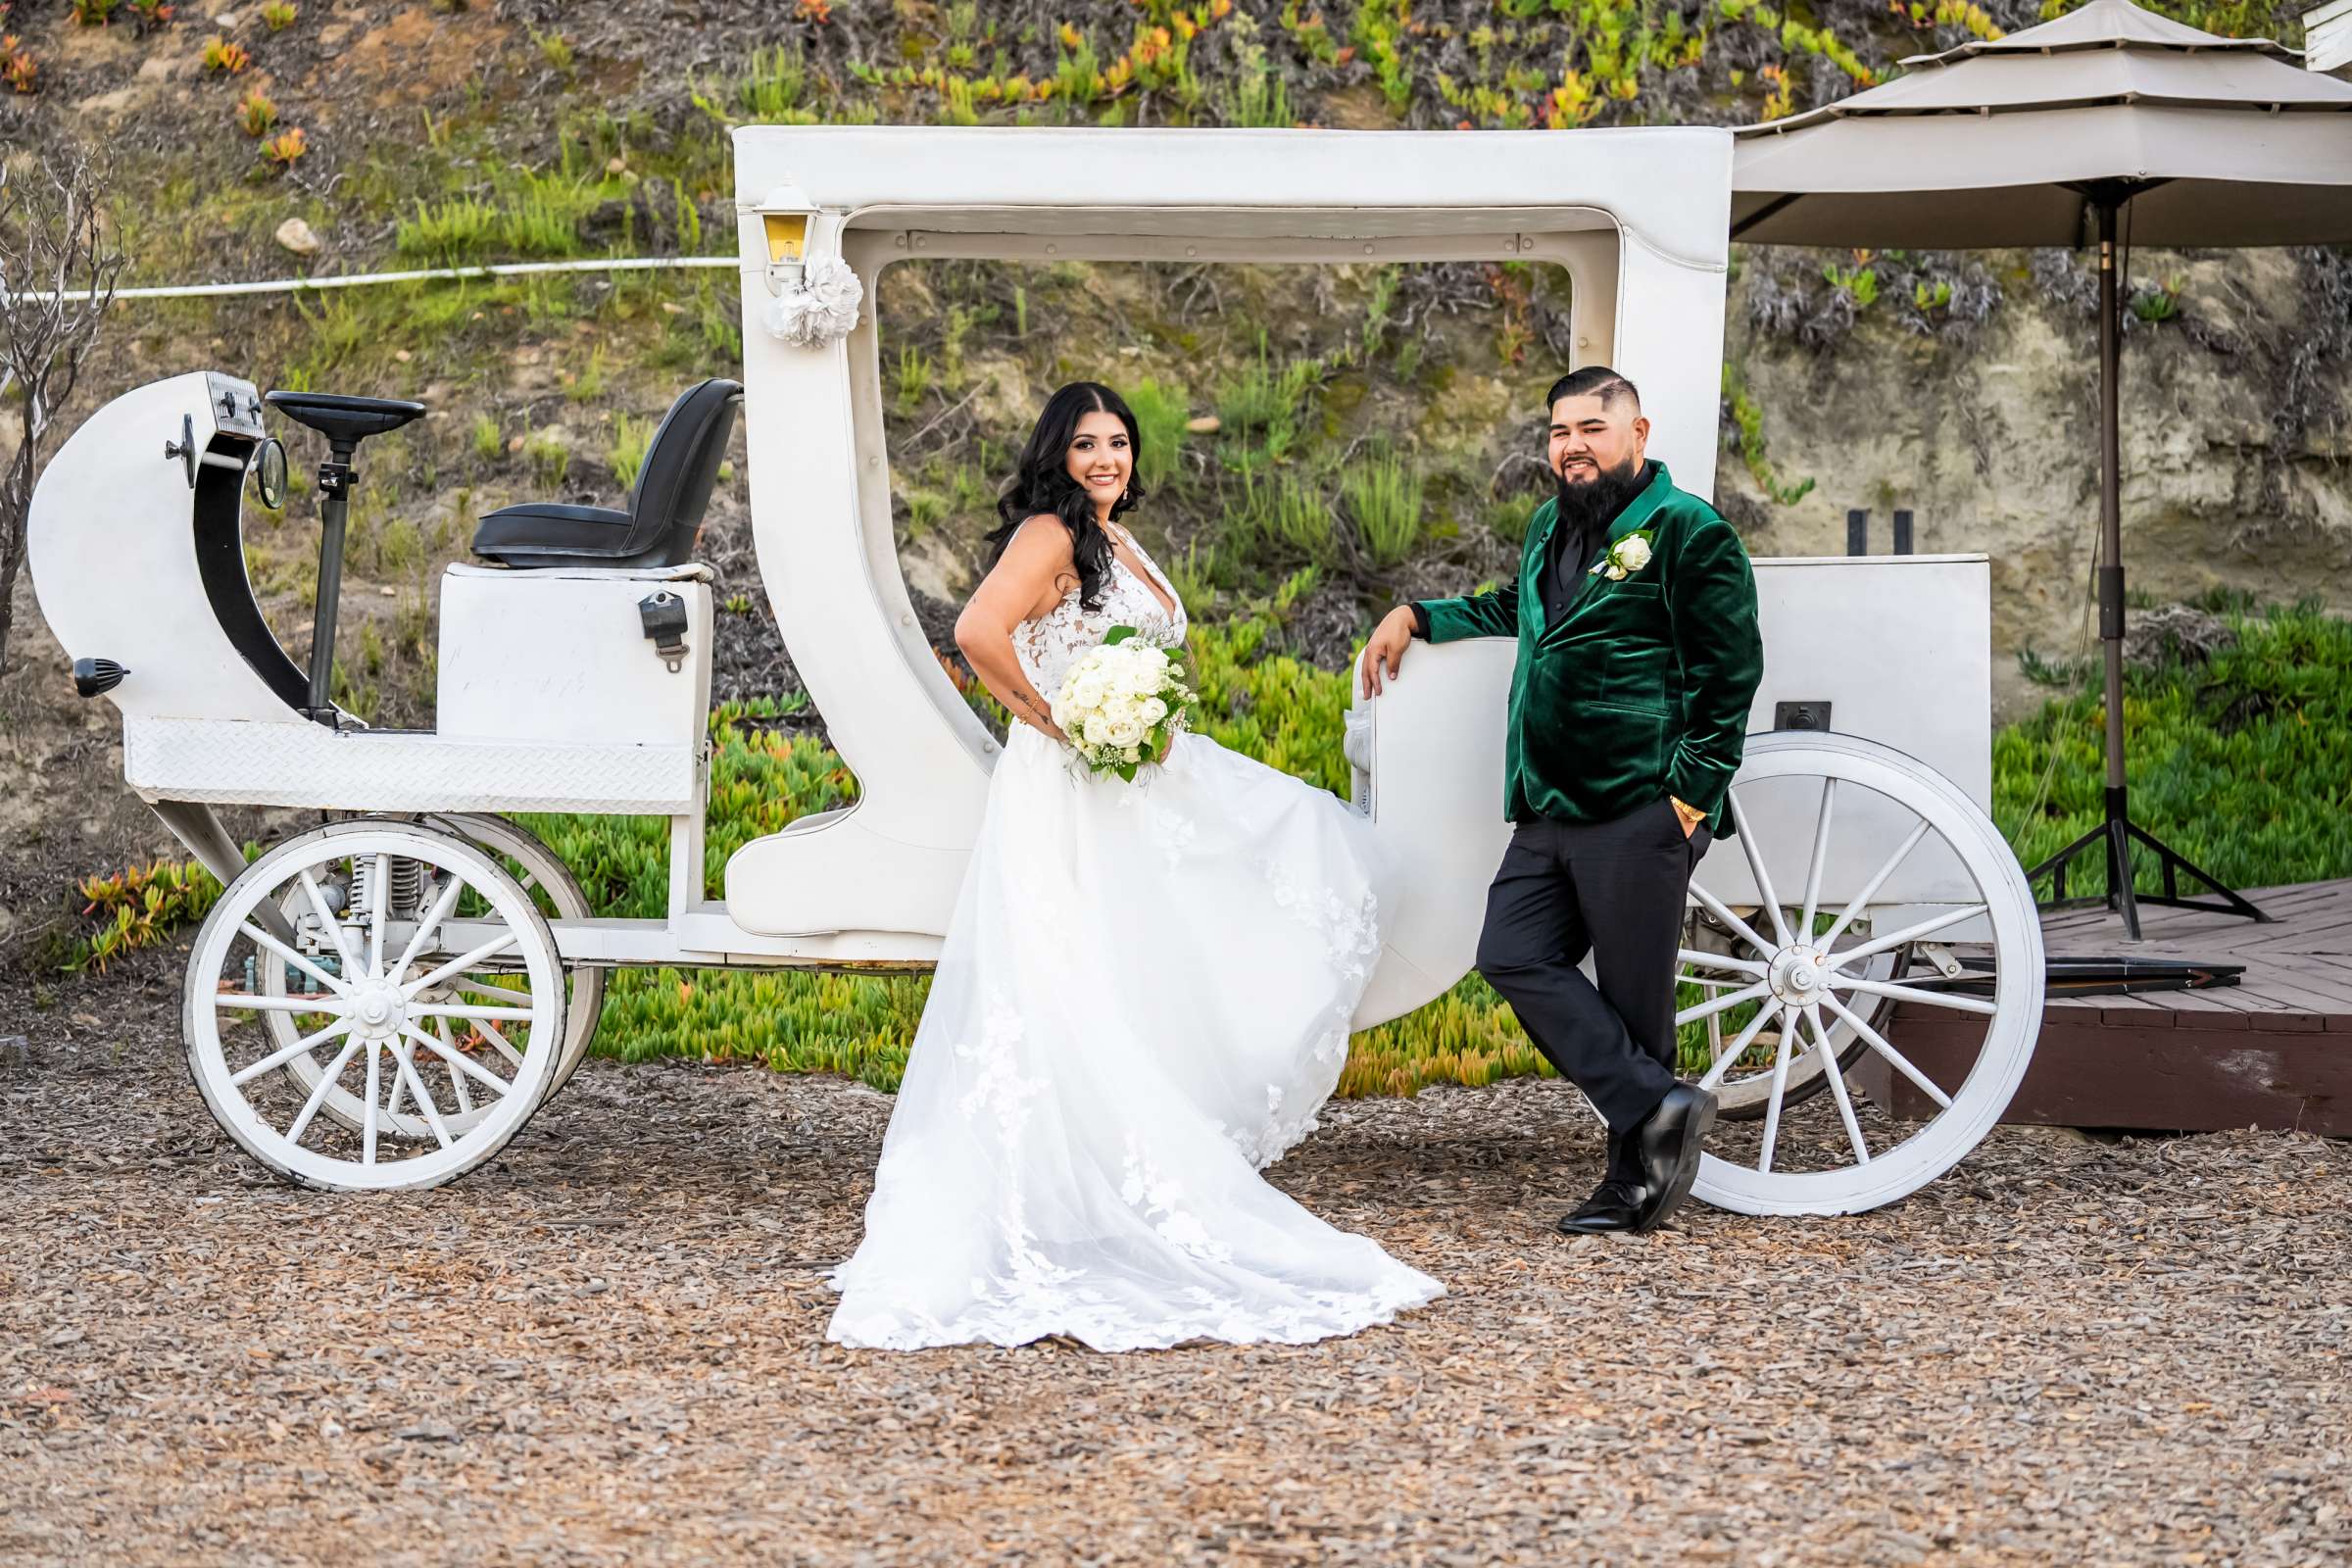 La Hacienda Wedding, Ashley and Alvaro Wedding Photo #2 by True Photography